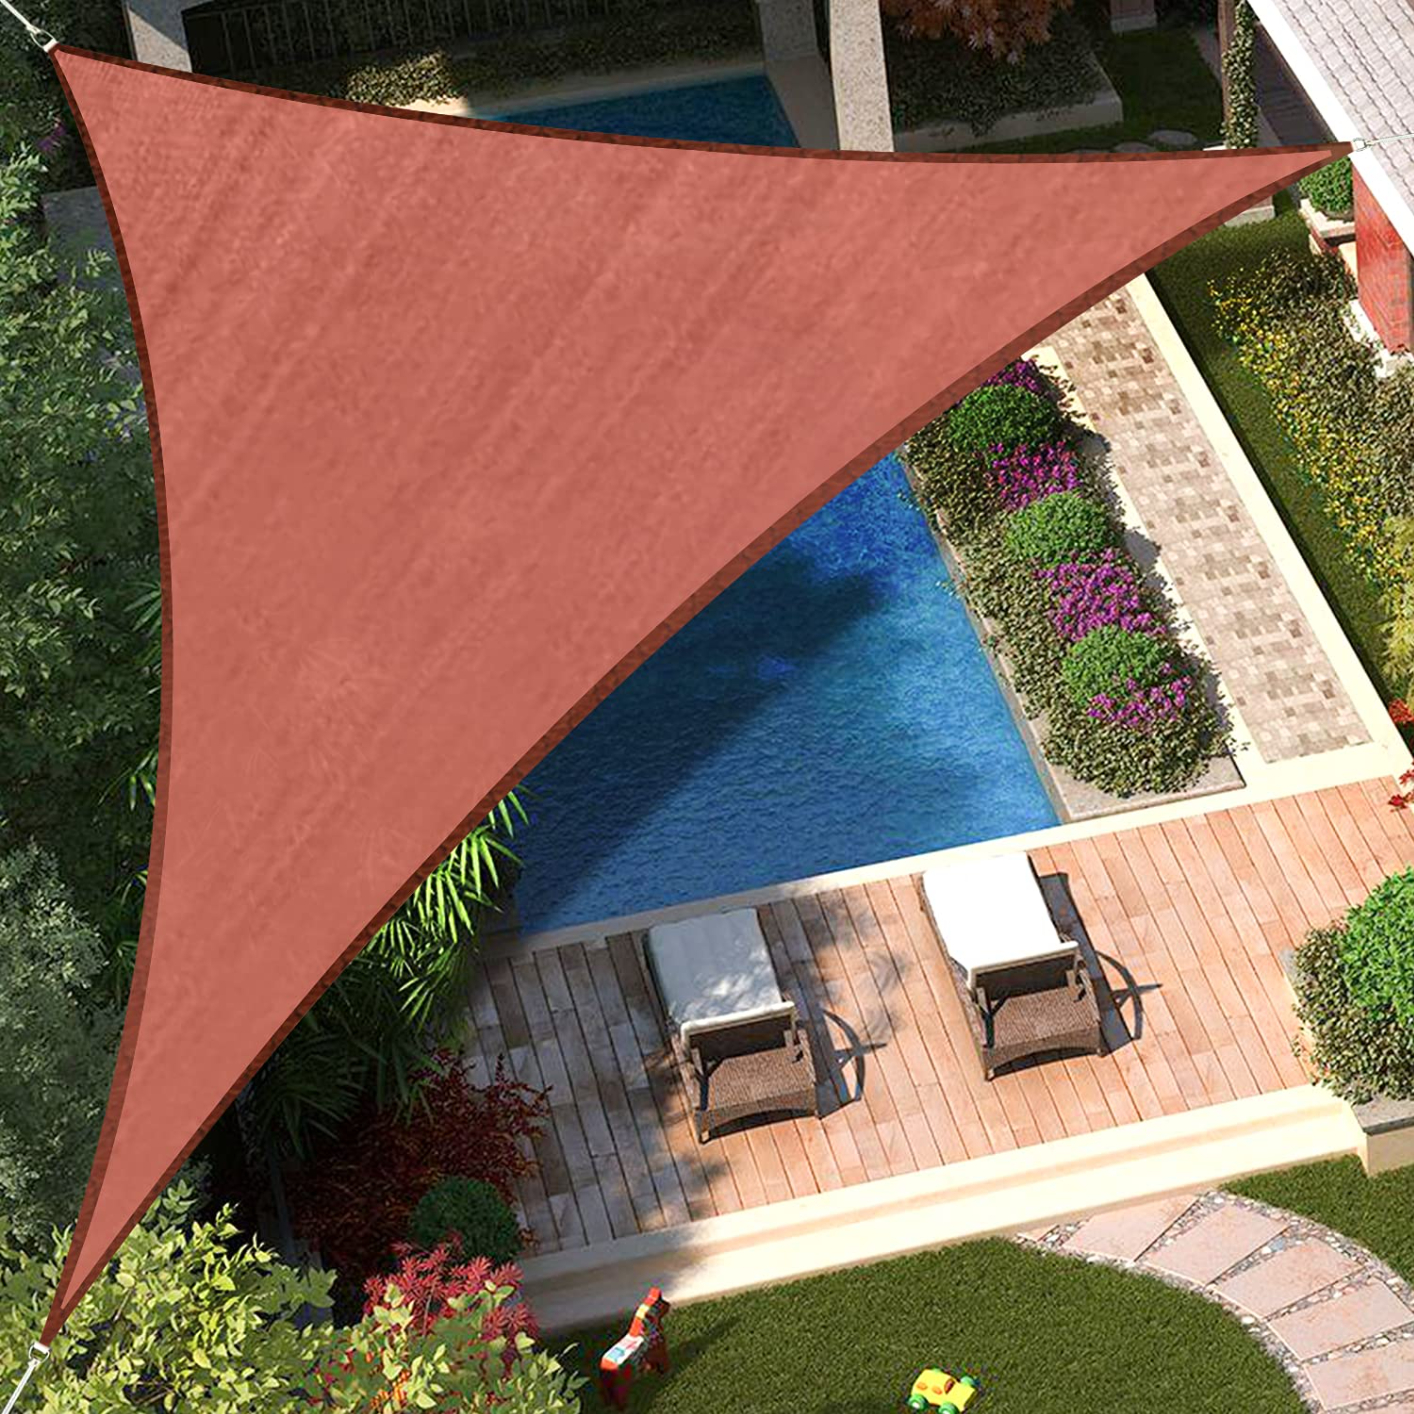 Home Sun Shade Sail, UV Block Shade Sail, Rectangle Outdoor Sun Shade Canopy for Patio Backyard Garden